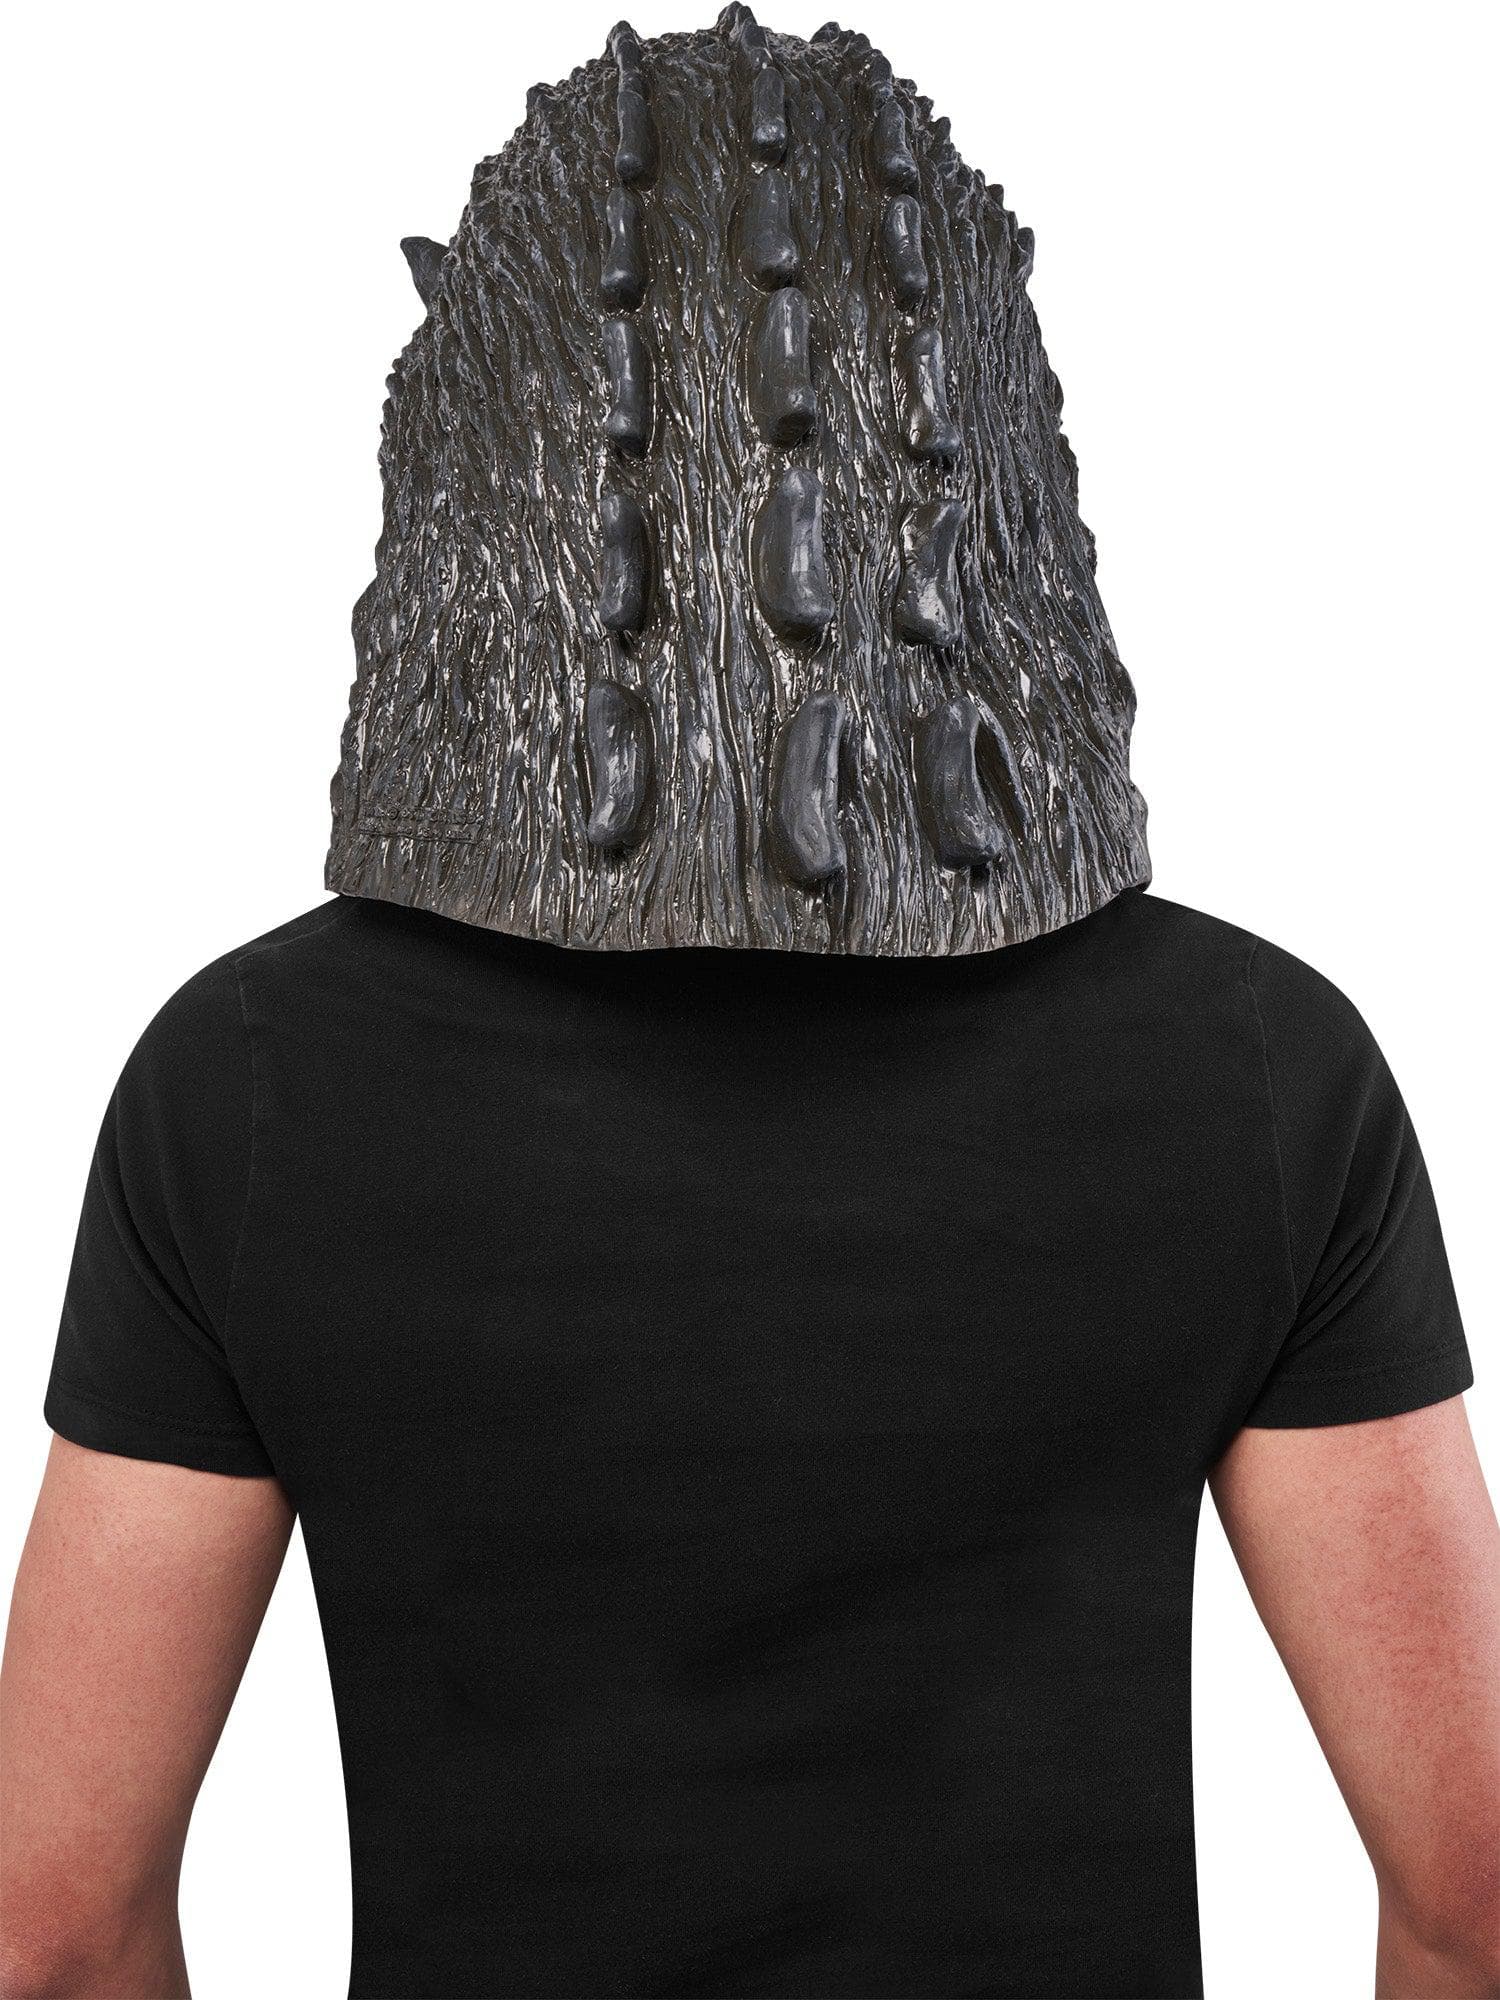 Adult Godzilla Full Overhead Mask - costumes.com